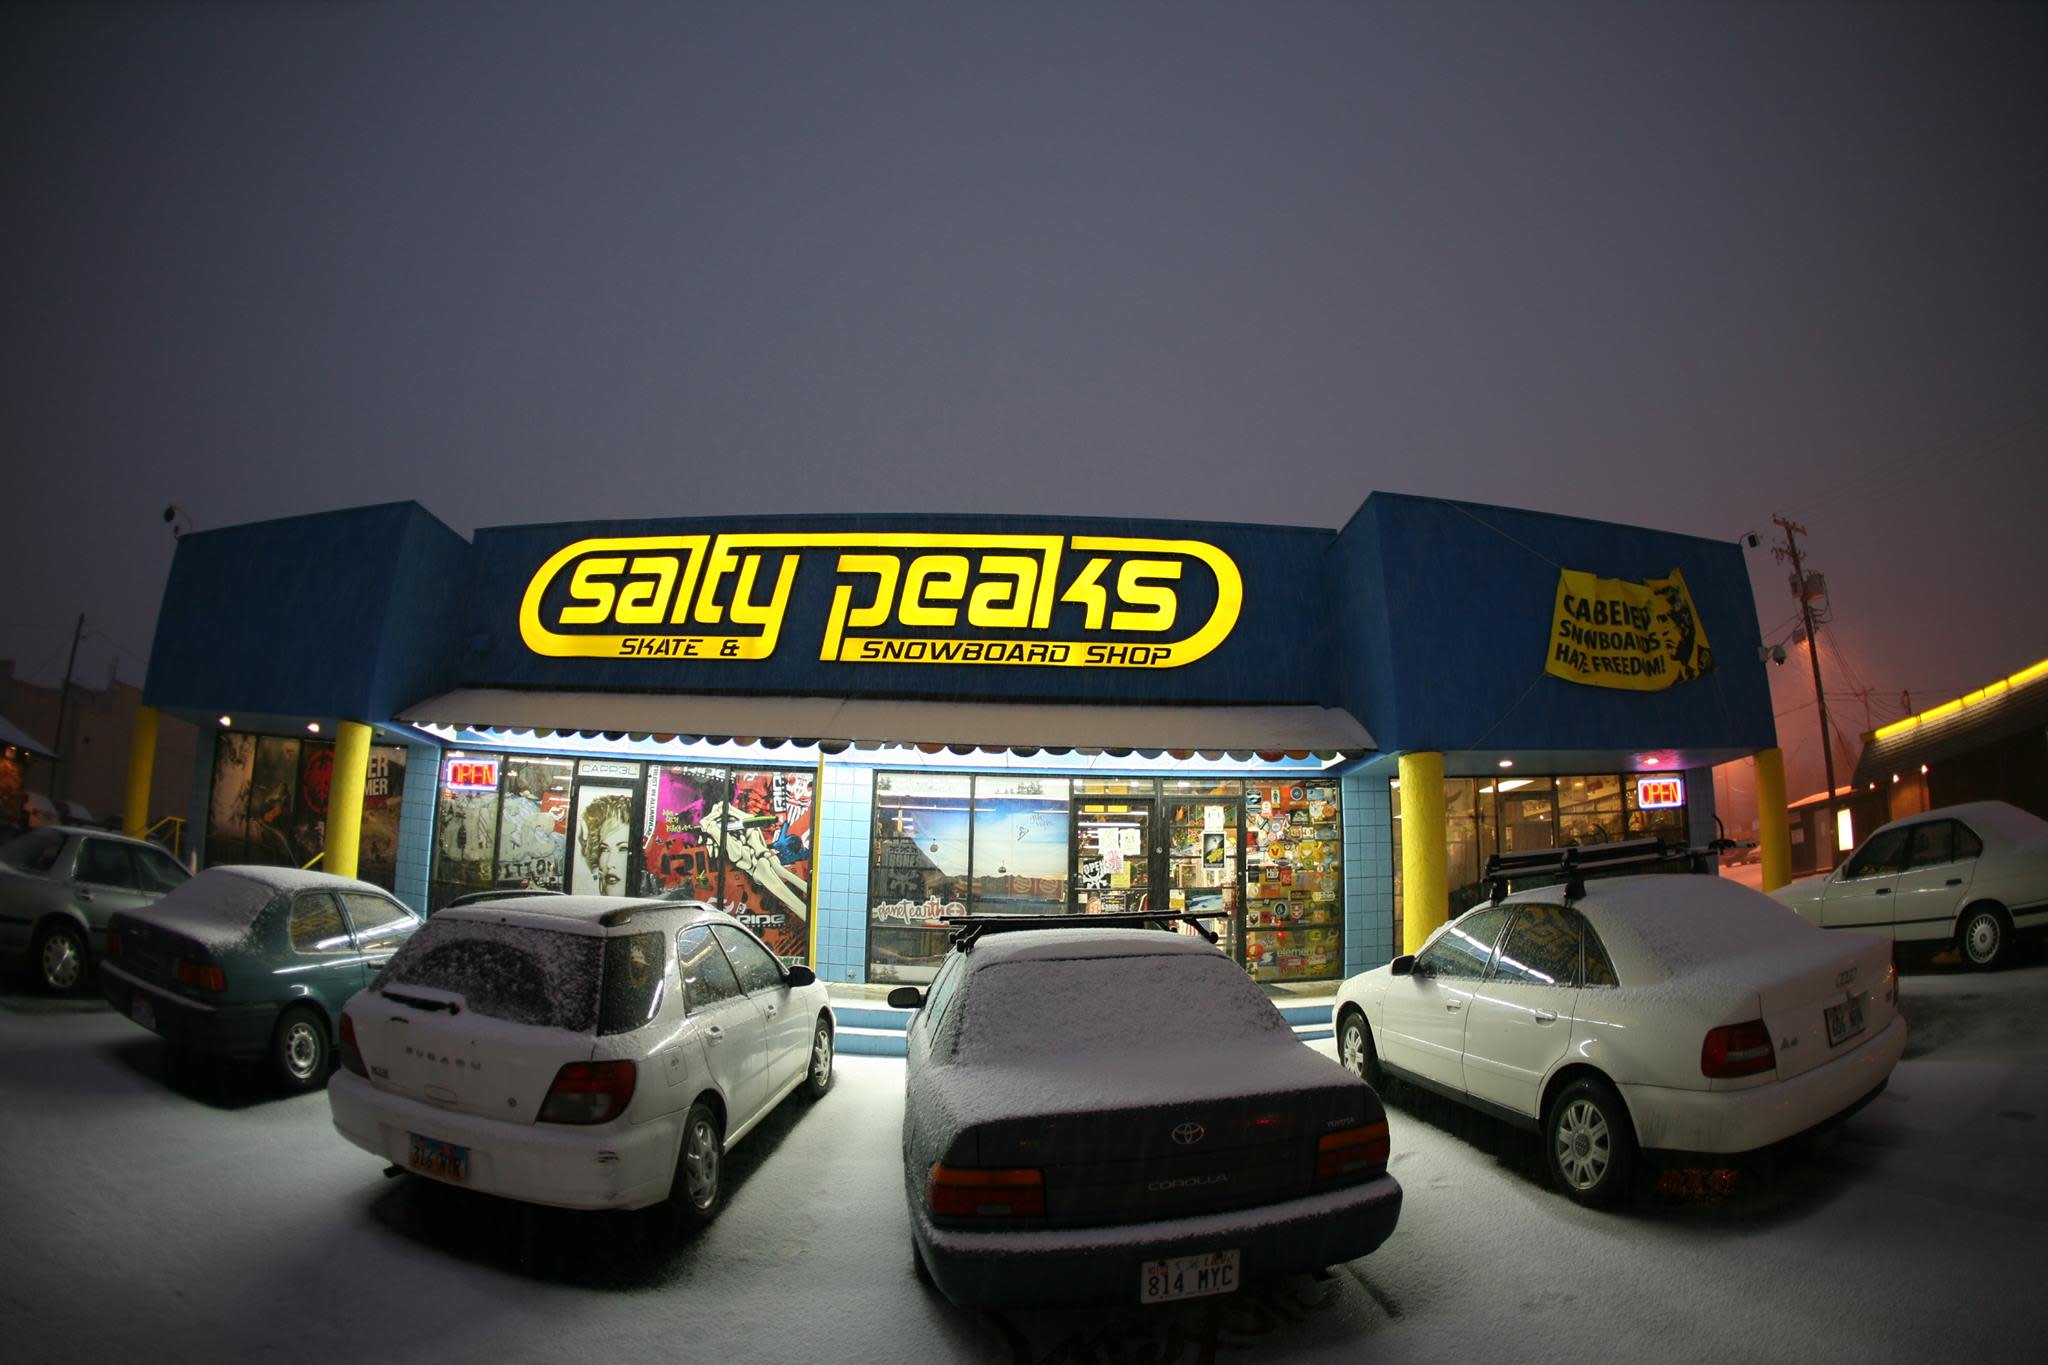 Salty Peaks Skate & Snowboard Shop